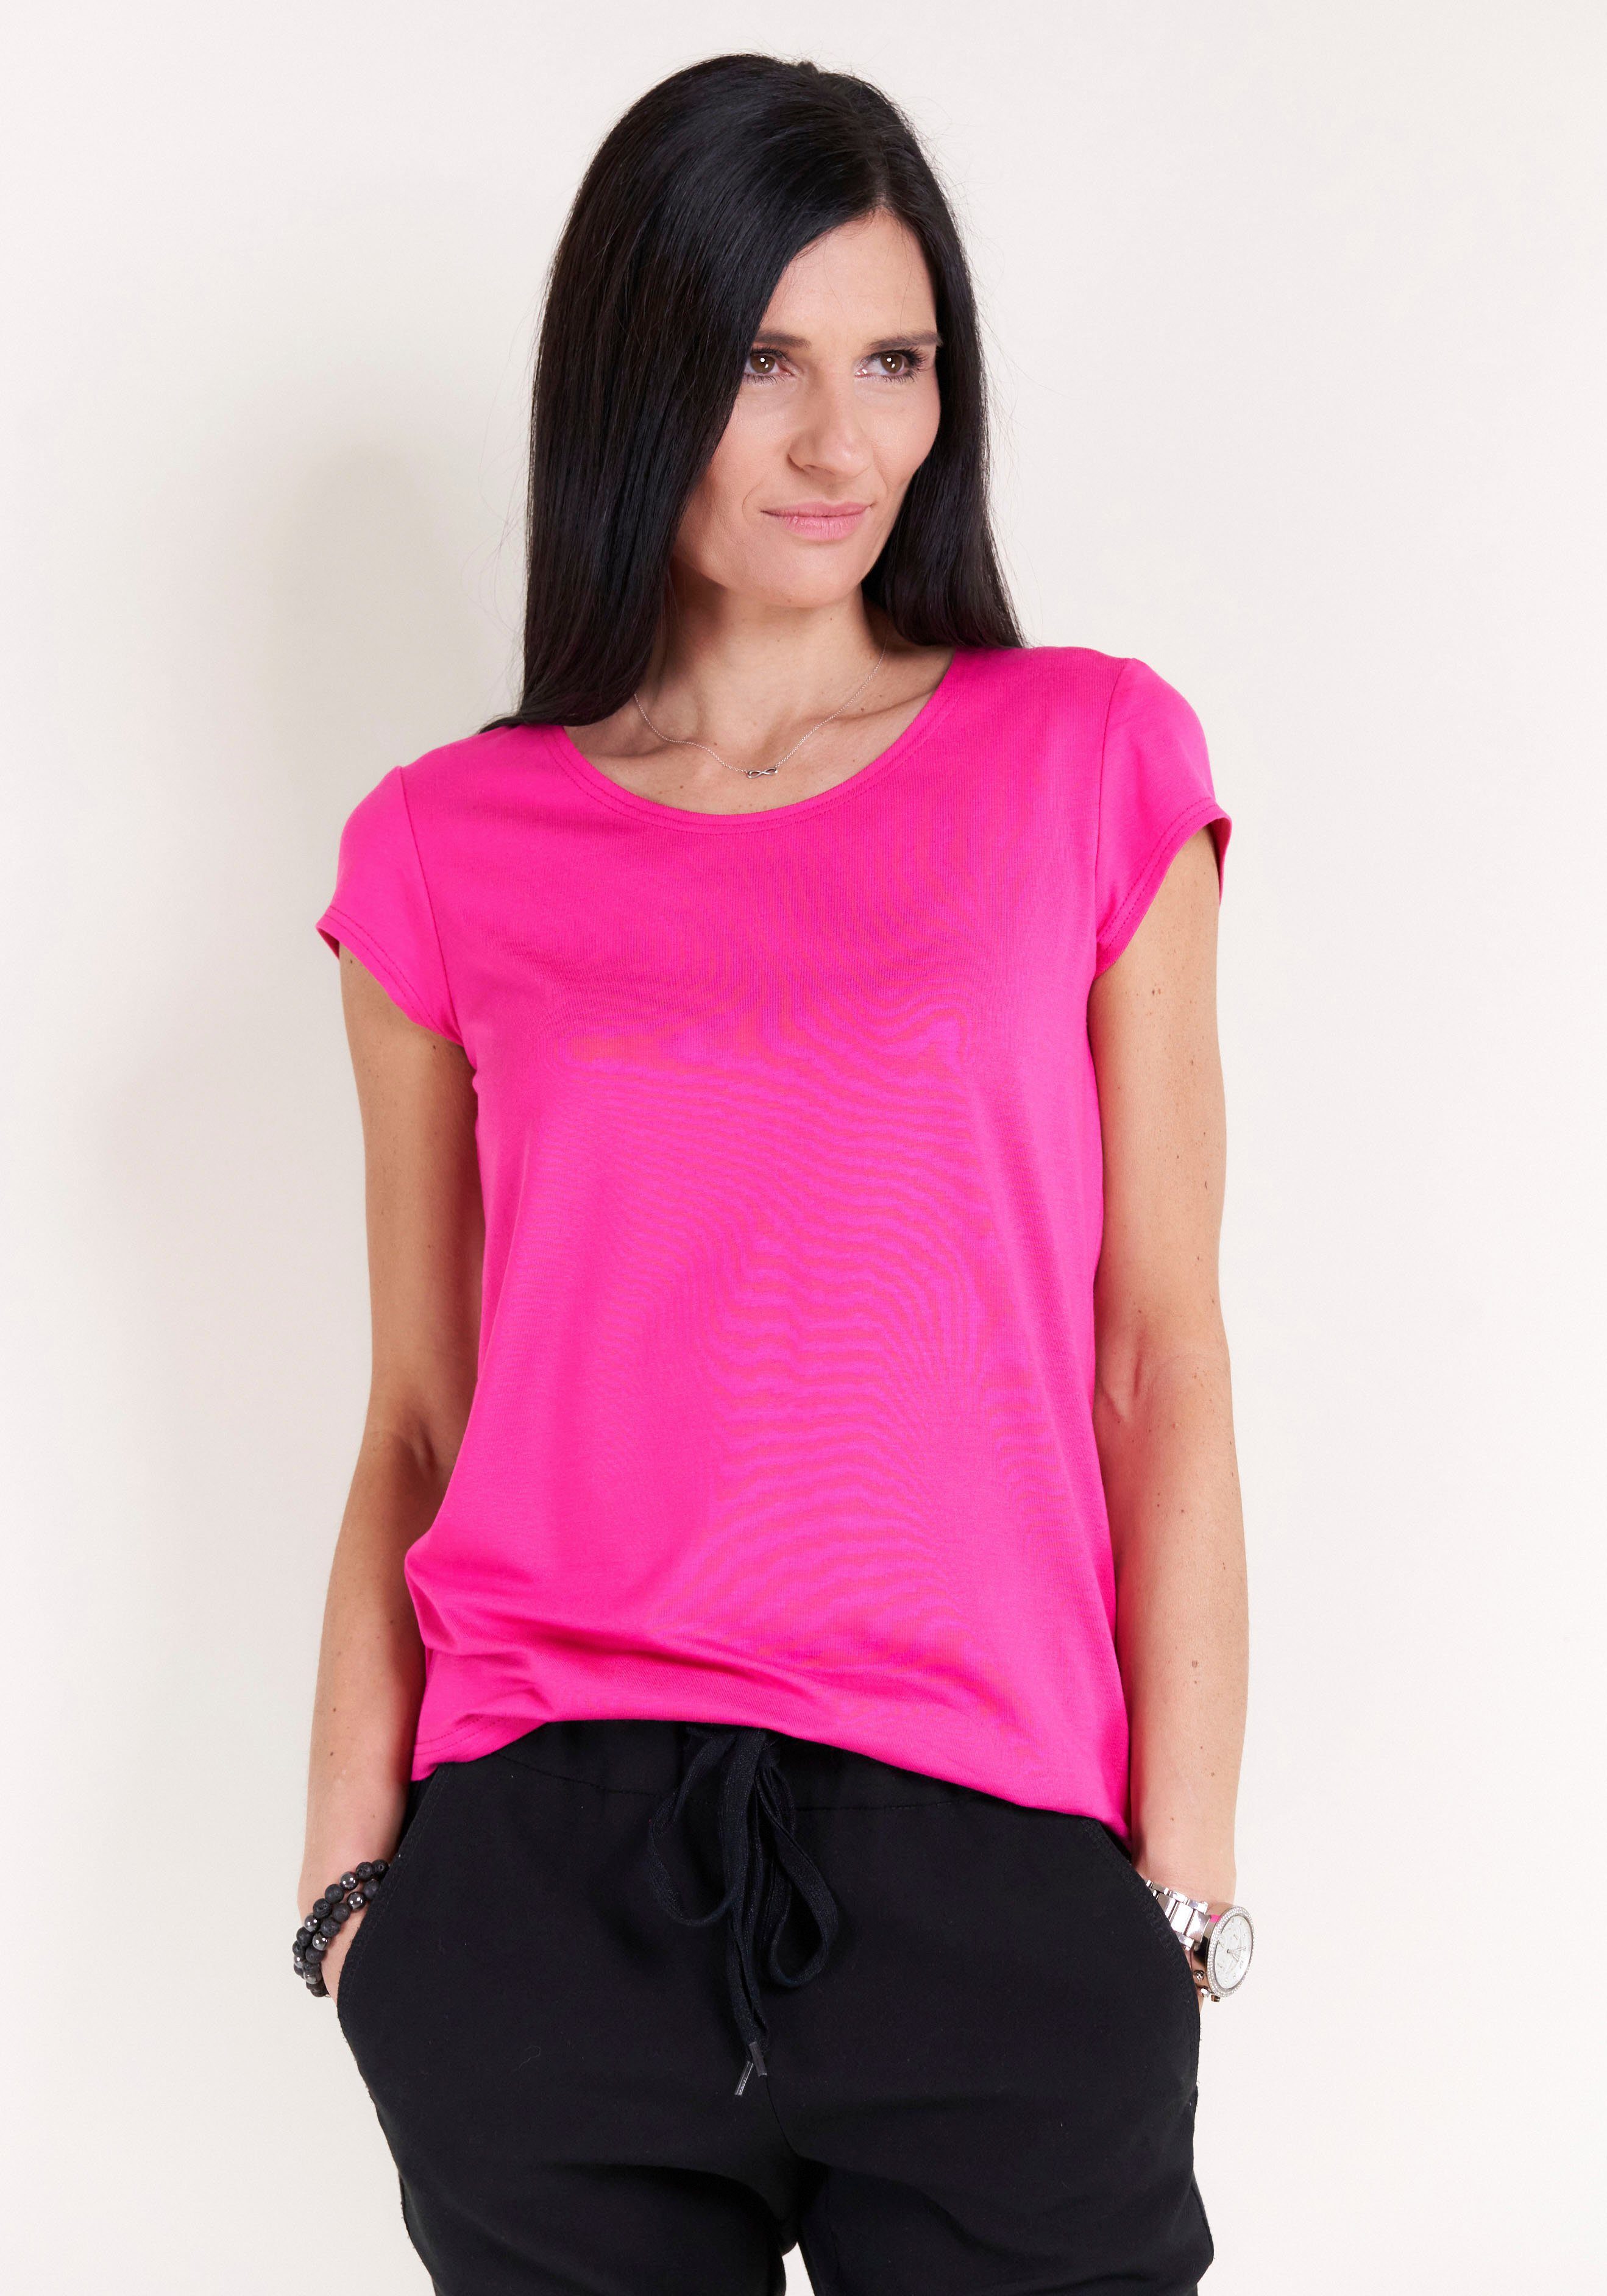 Seidel Moden T-Shirt Seidel GERMANY MADE pink mit IN Moden Kappenärmel